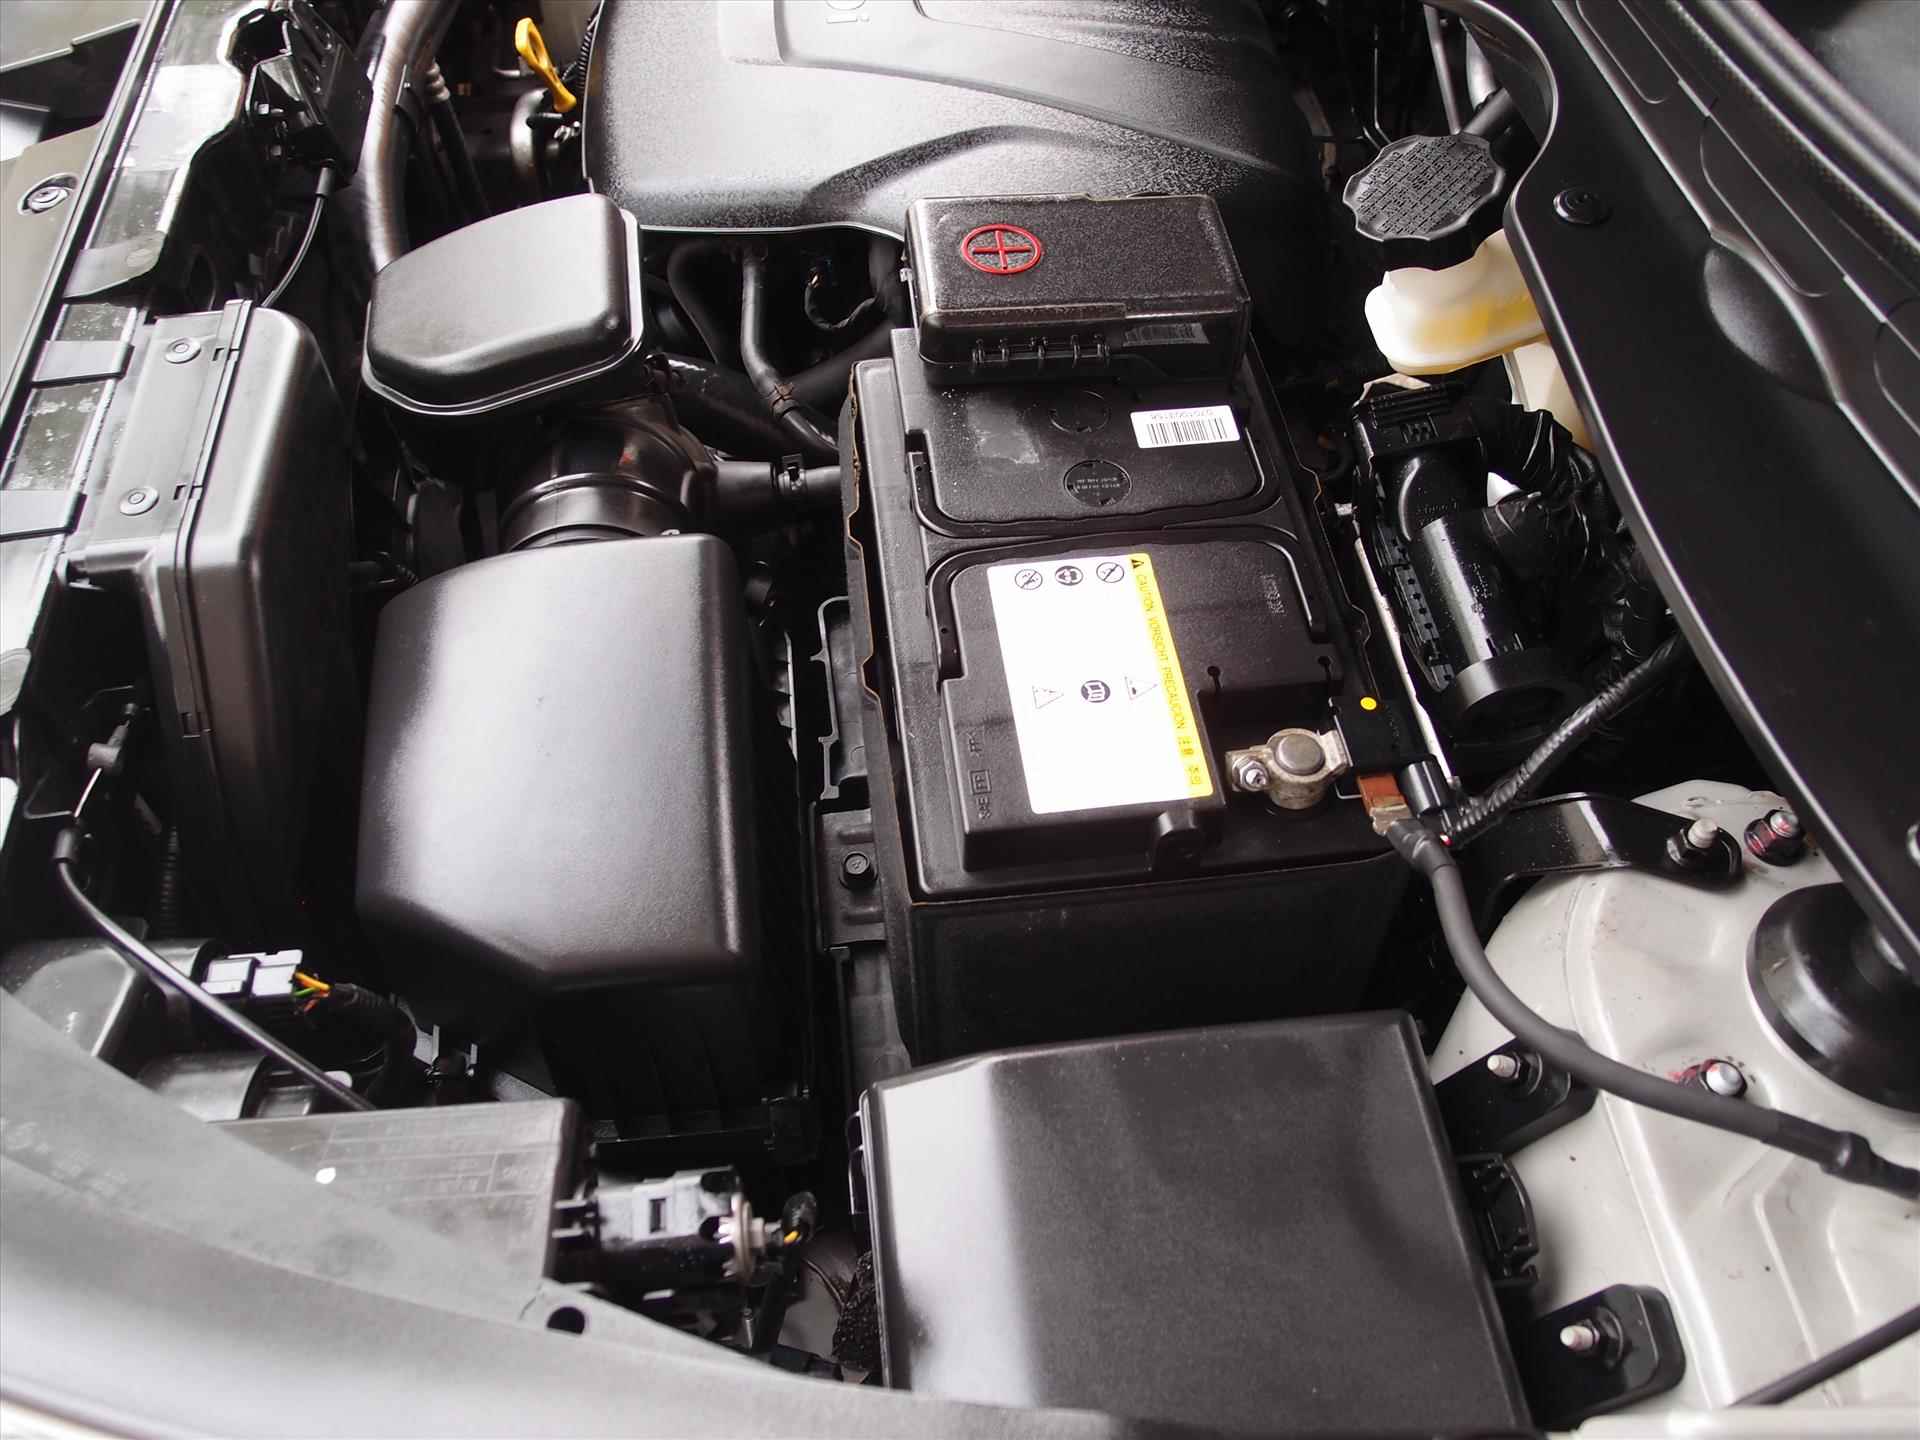 Kia Sportage 1.6 GDI 135pk Dynamics in  " New  " staat met nieuwe motor. - 18/22